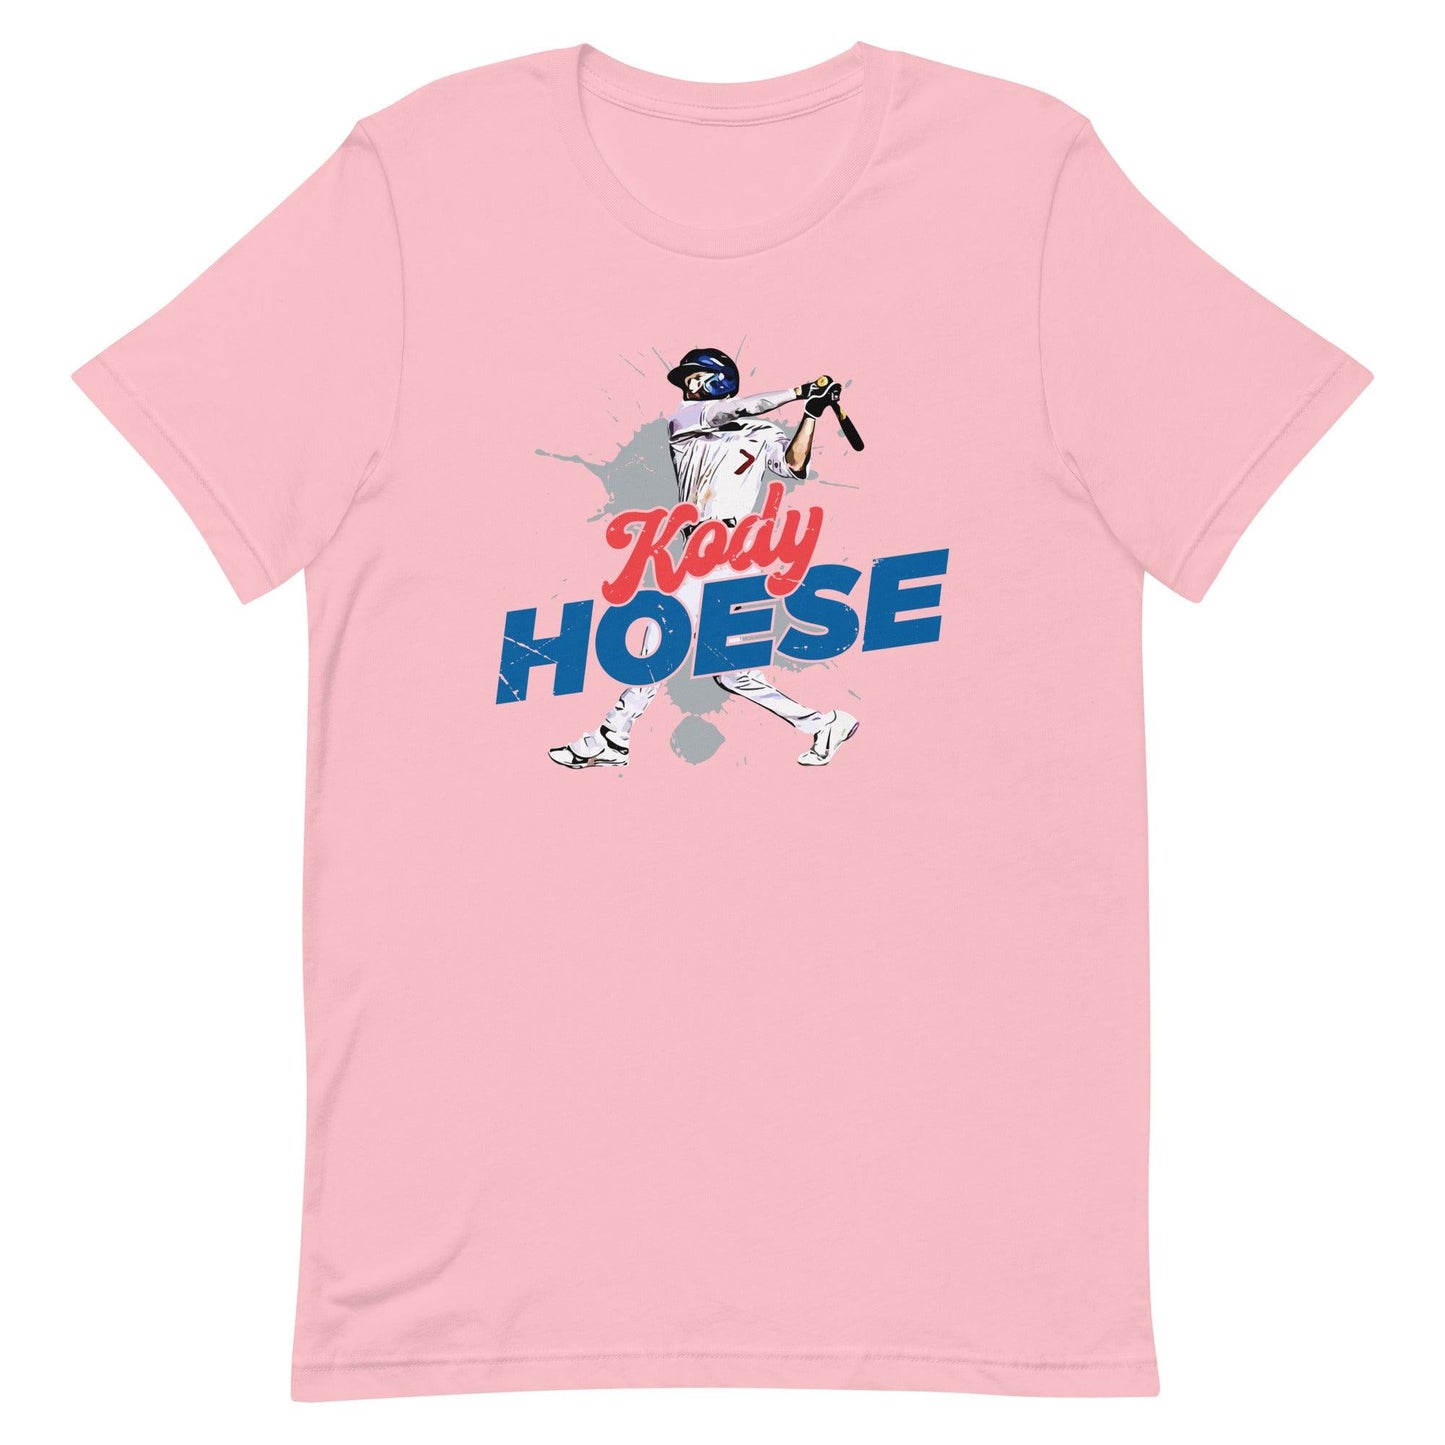 Kody Hoese "Power" t-shirt - Fan Arch